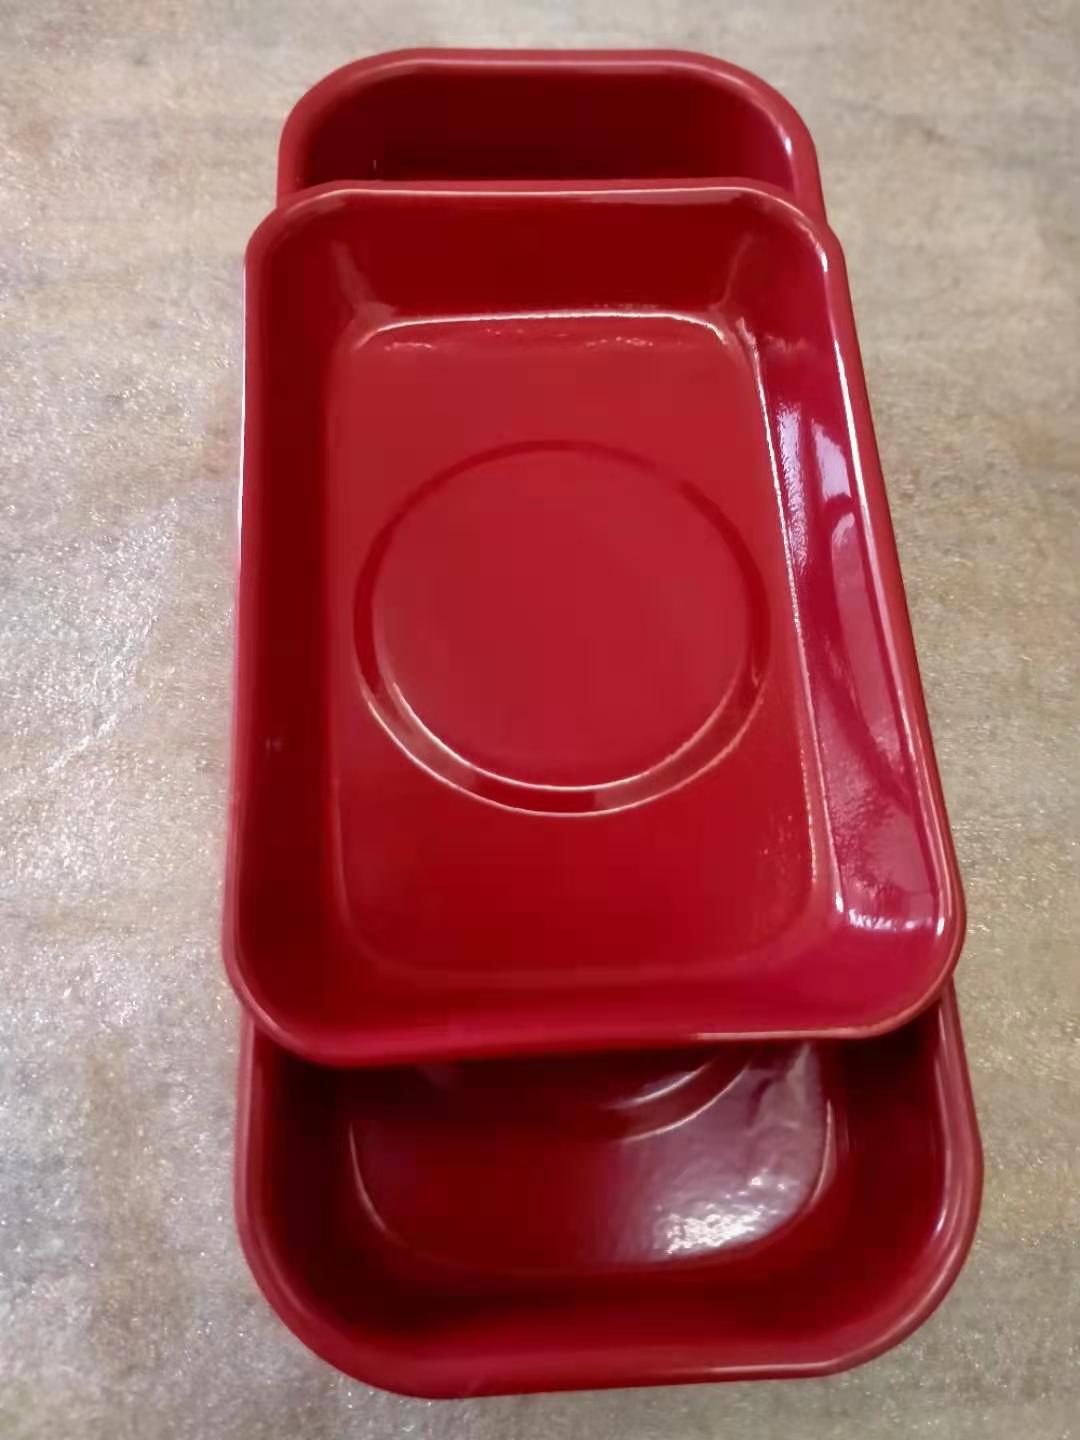 红色喷塑磁性收纳碗 汽保机修磁力盘 底部装配磁铁 网上热销磁碗 可以牢牢吸附在铁制品上在倒挂状态磁碗和小零件都不会滑落1